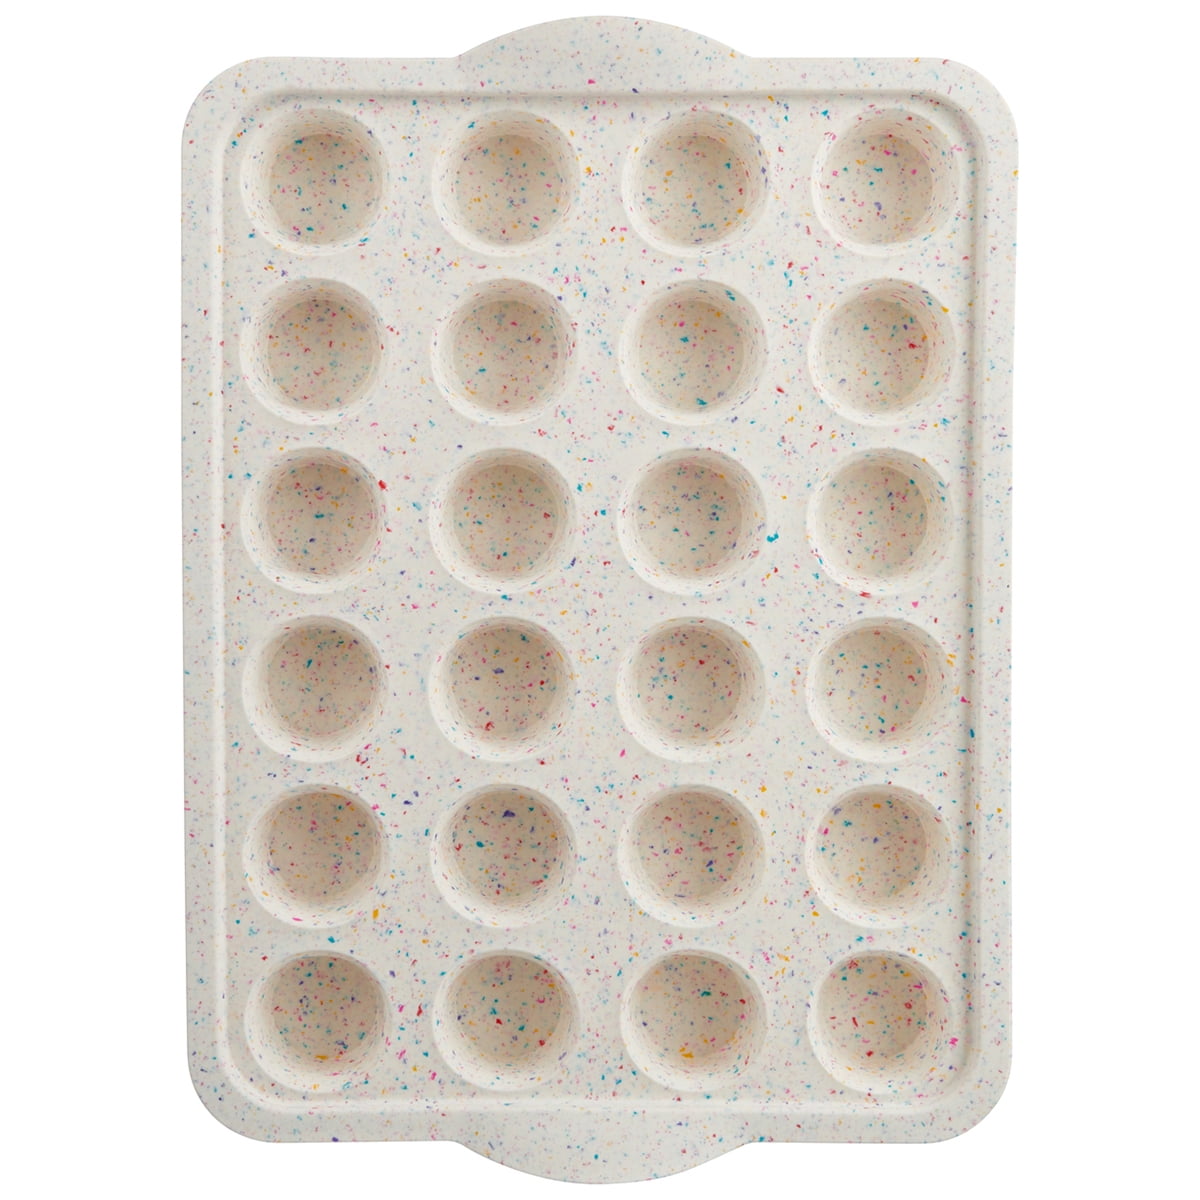 Trudeau Confetti Structured Silicone 24C Mini Muffin Pan by World Market